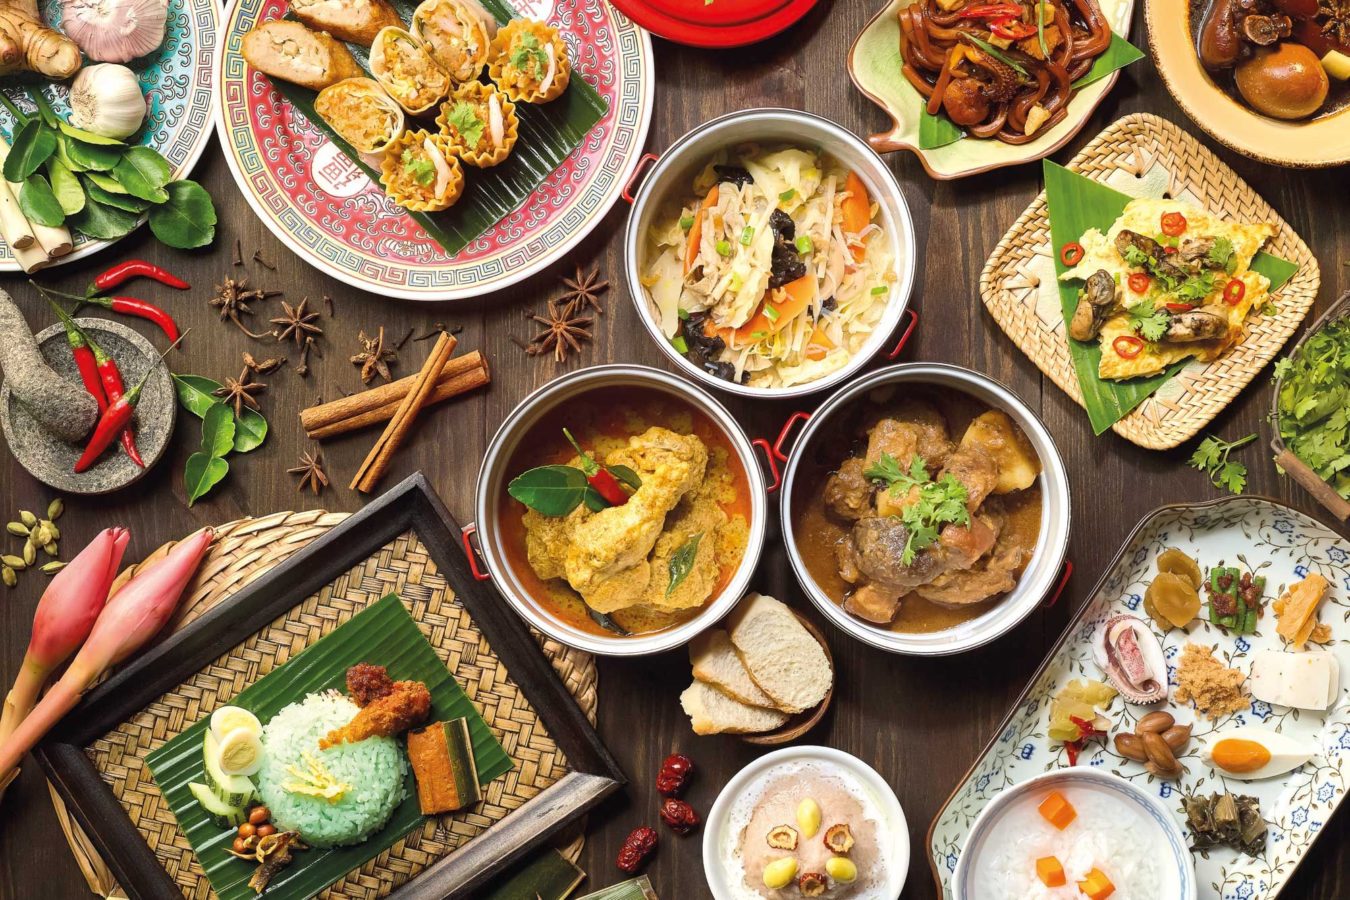 Ẩm thực Singapore có sự giao thoa của nhiều nền ẩm thực khác trên thế giới